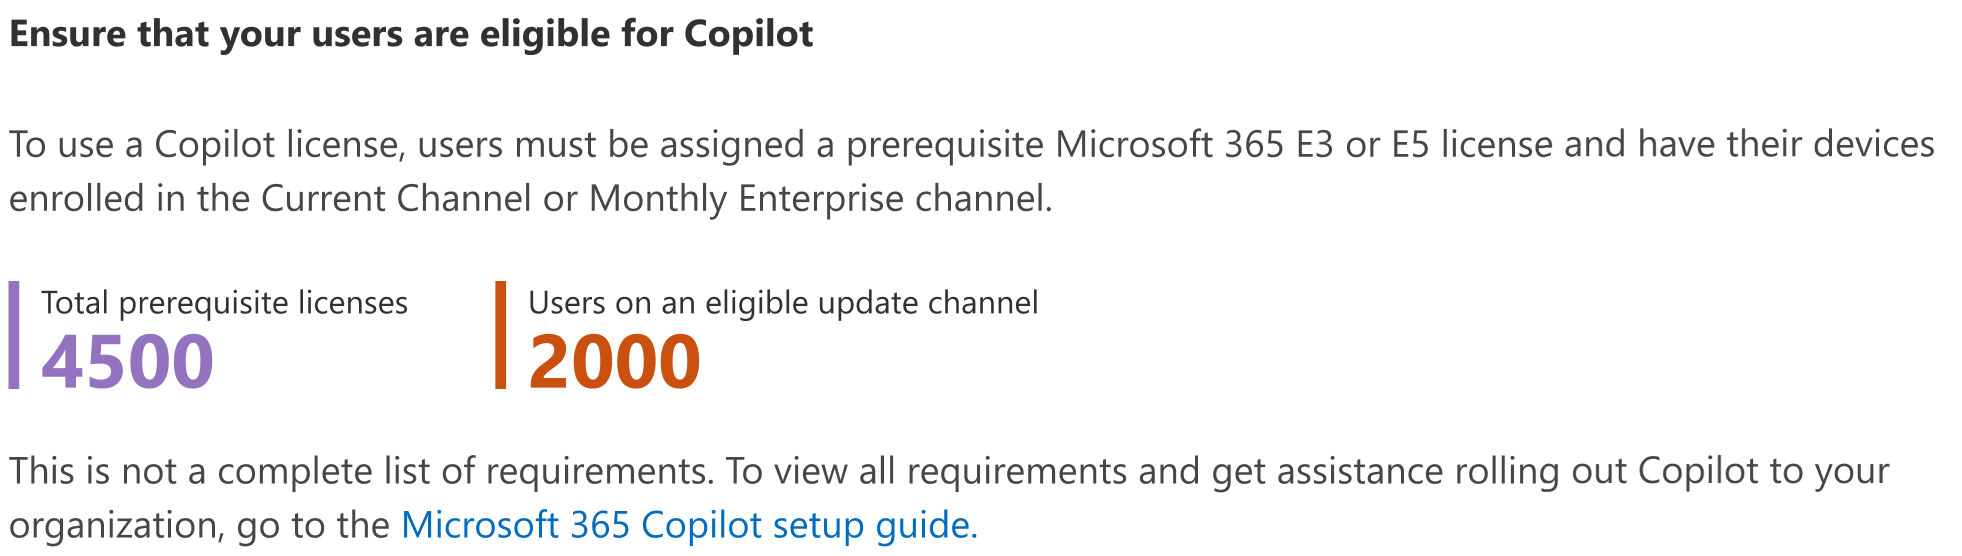 Schermopname die laat zien hoe u ervoor kunt zorgen dat gebruikers in aanmerking komen voor Copilot voor Microsoft 365.